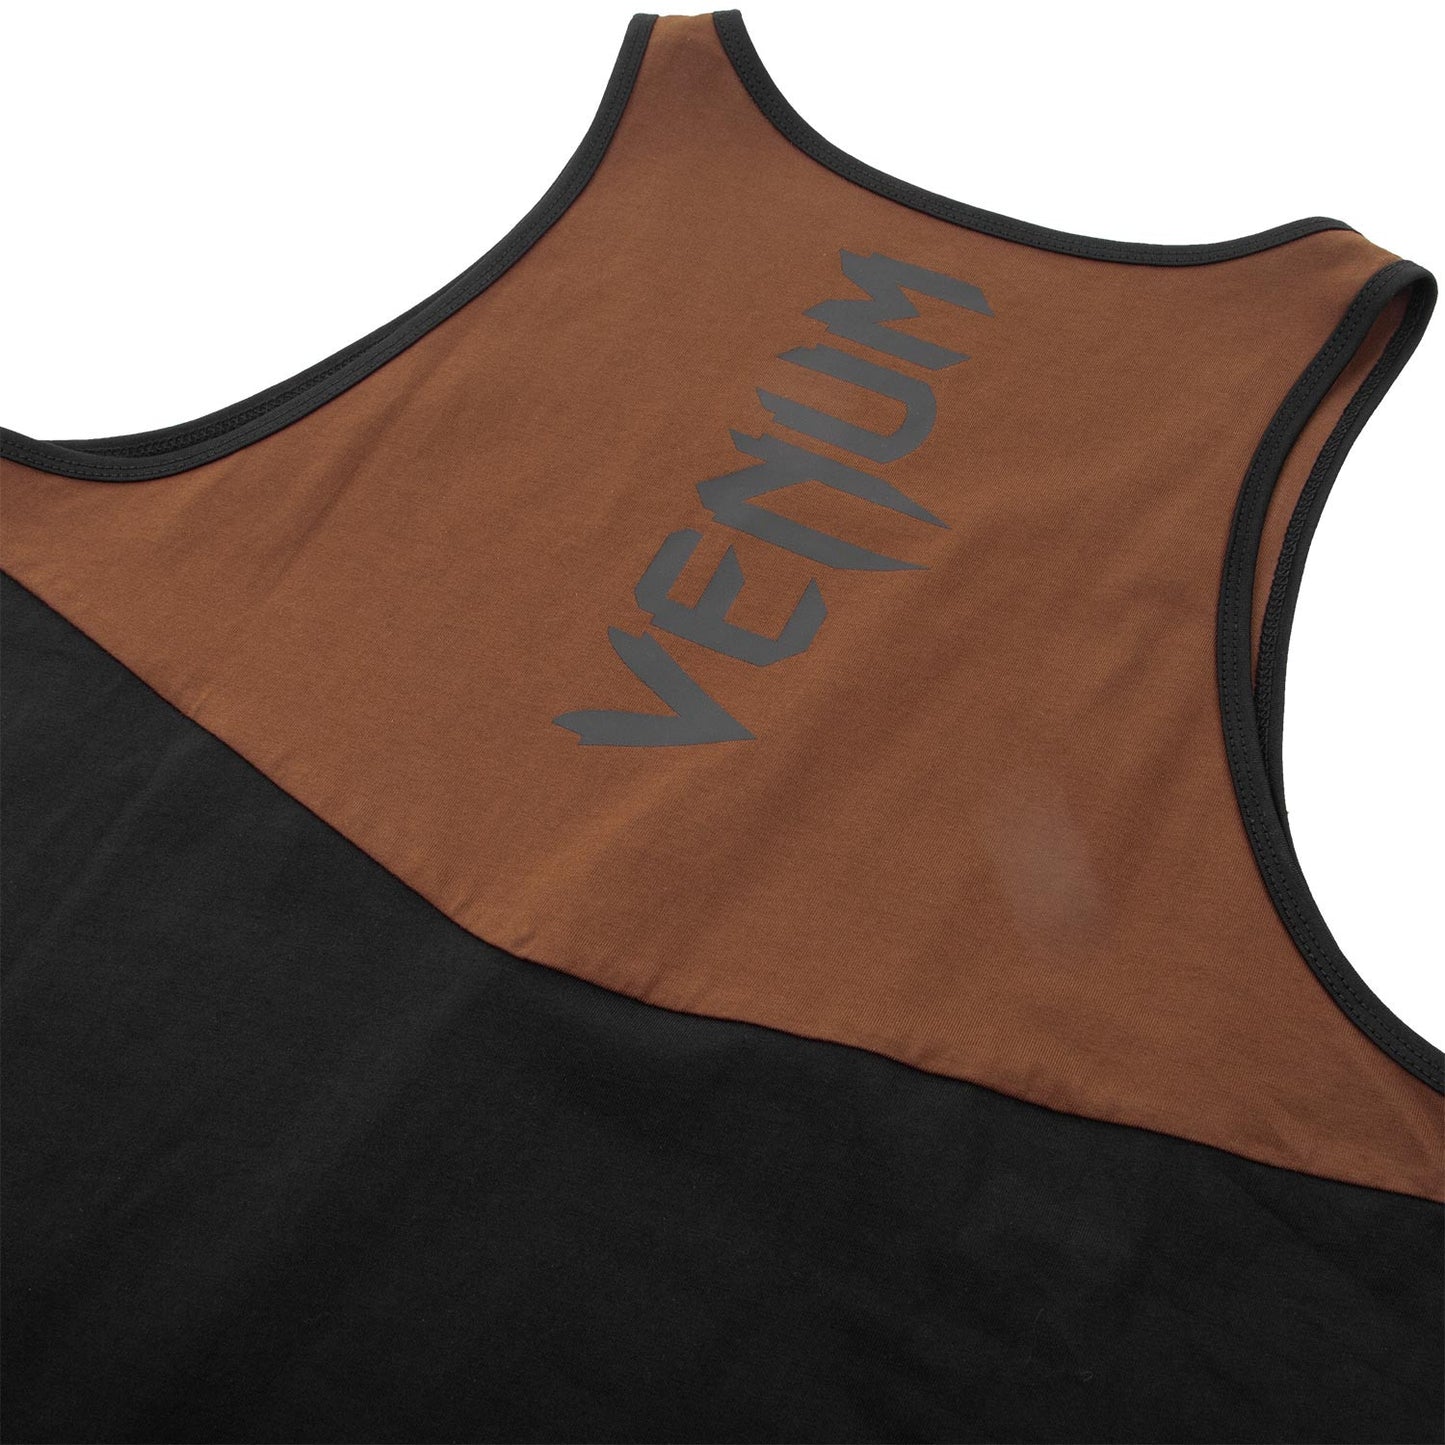 Camiseta sin mangas Venum Laser Classic - Negro/marrón - Exclusivad